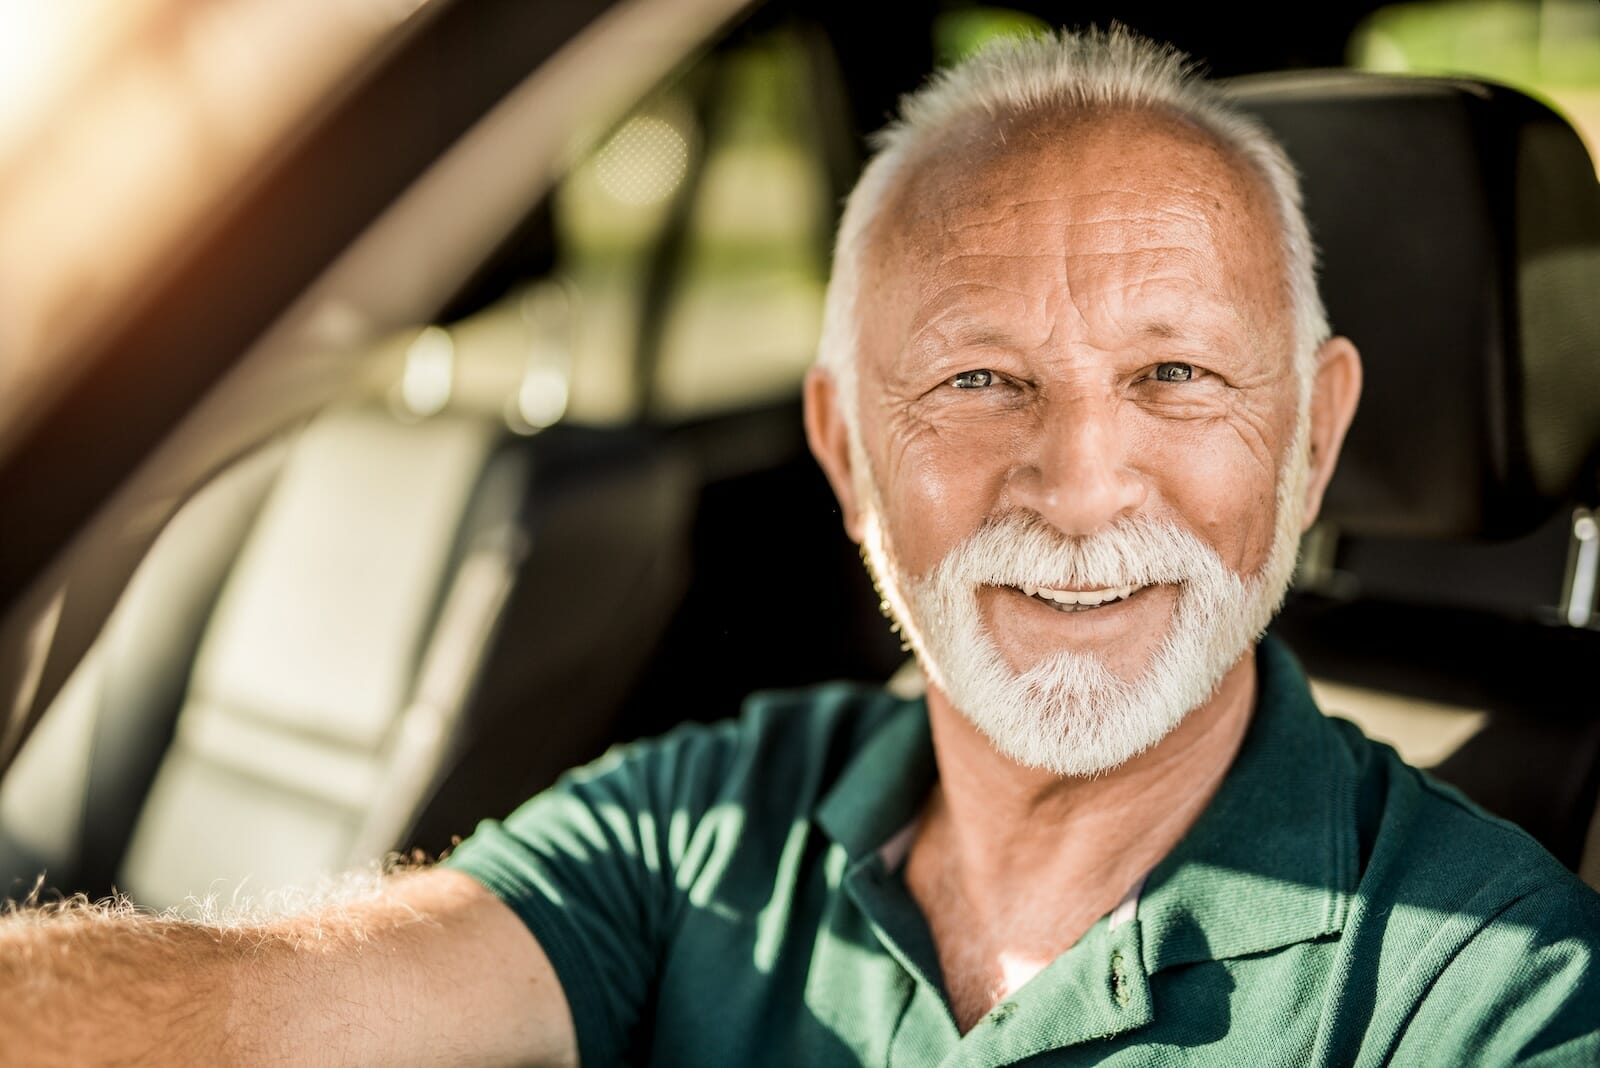 Headshot of happy senior man in his car looking at camera.